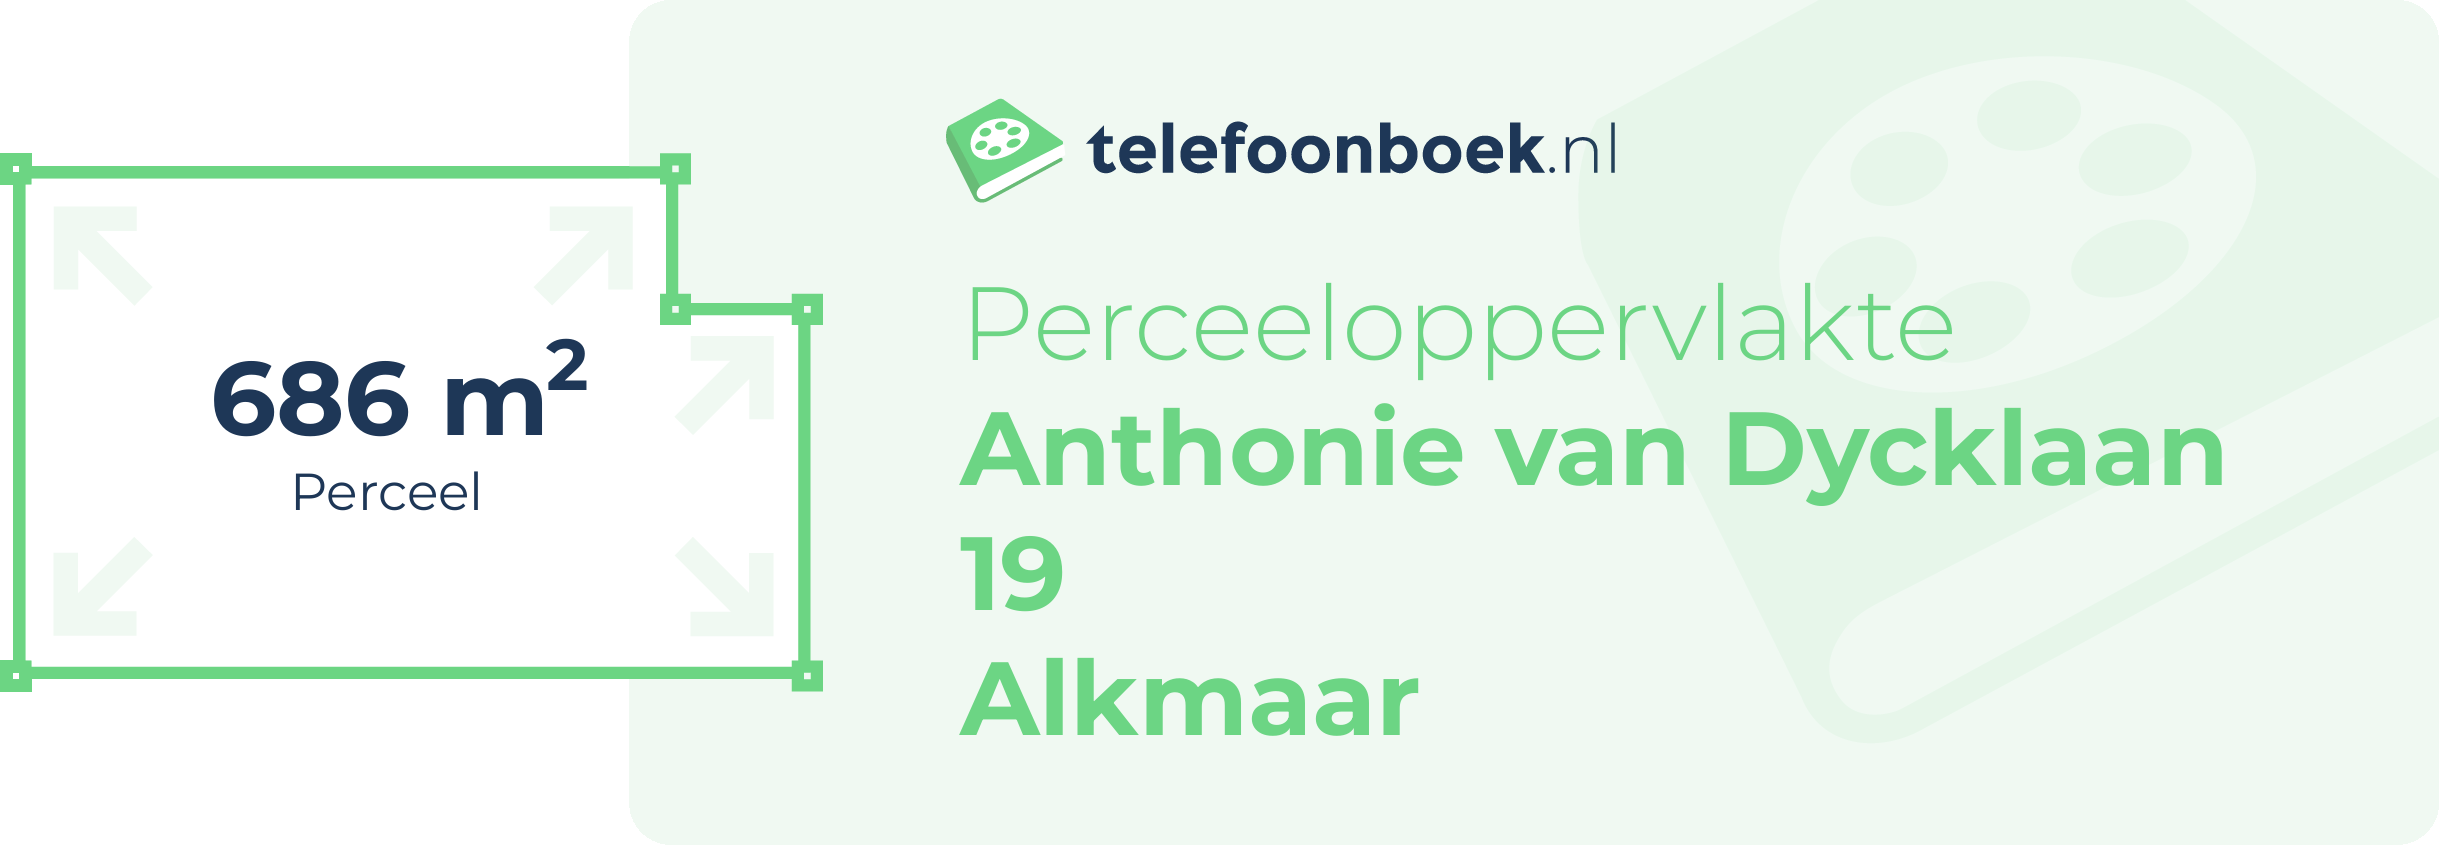 Perceeloppervlakte Anthonie Van Dycklaan 19 Alkmaar